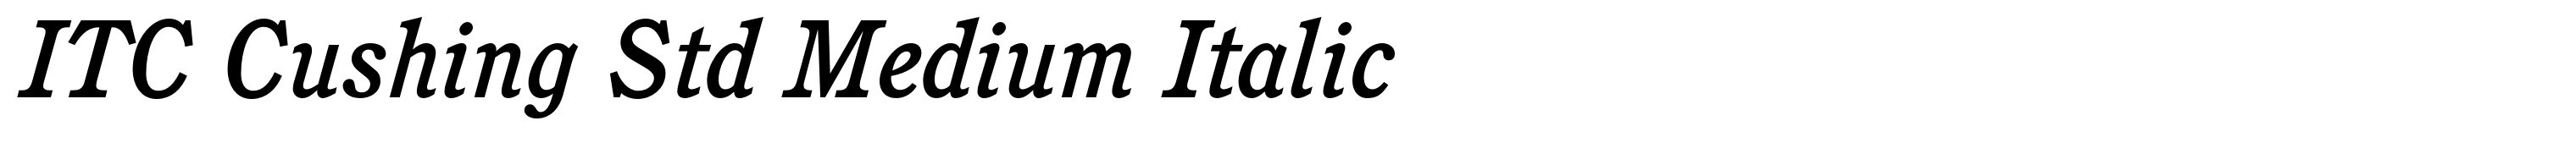 ITC Cushing Std Medium Italic